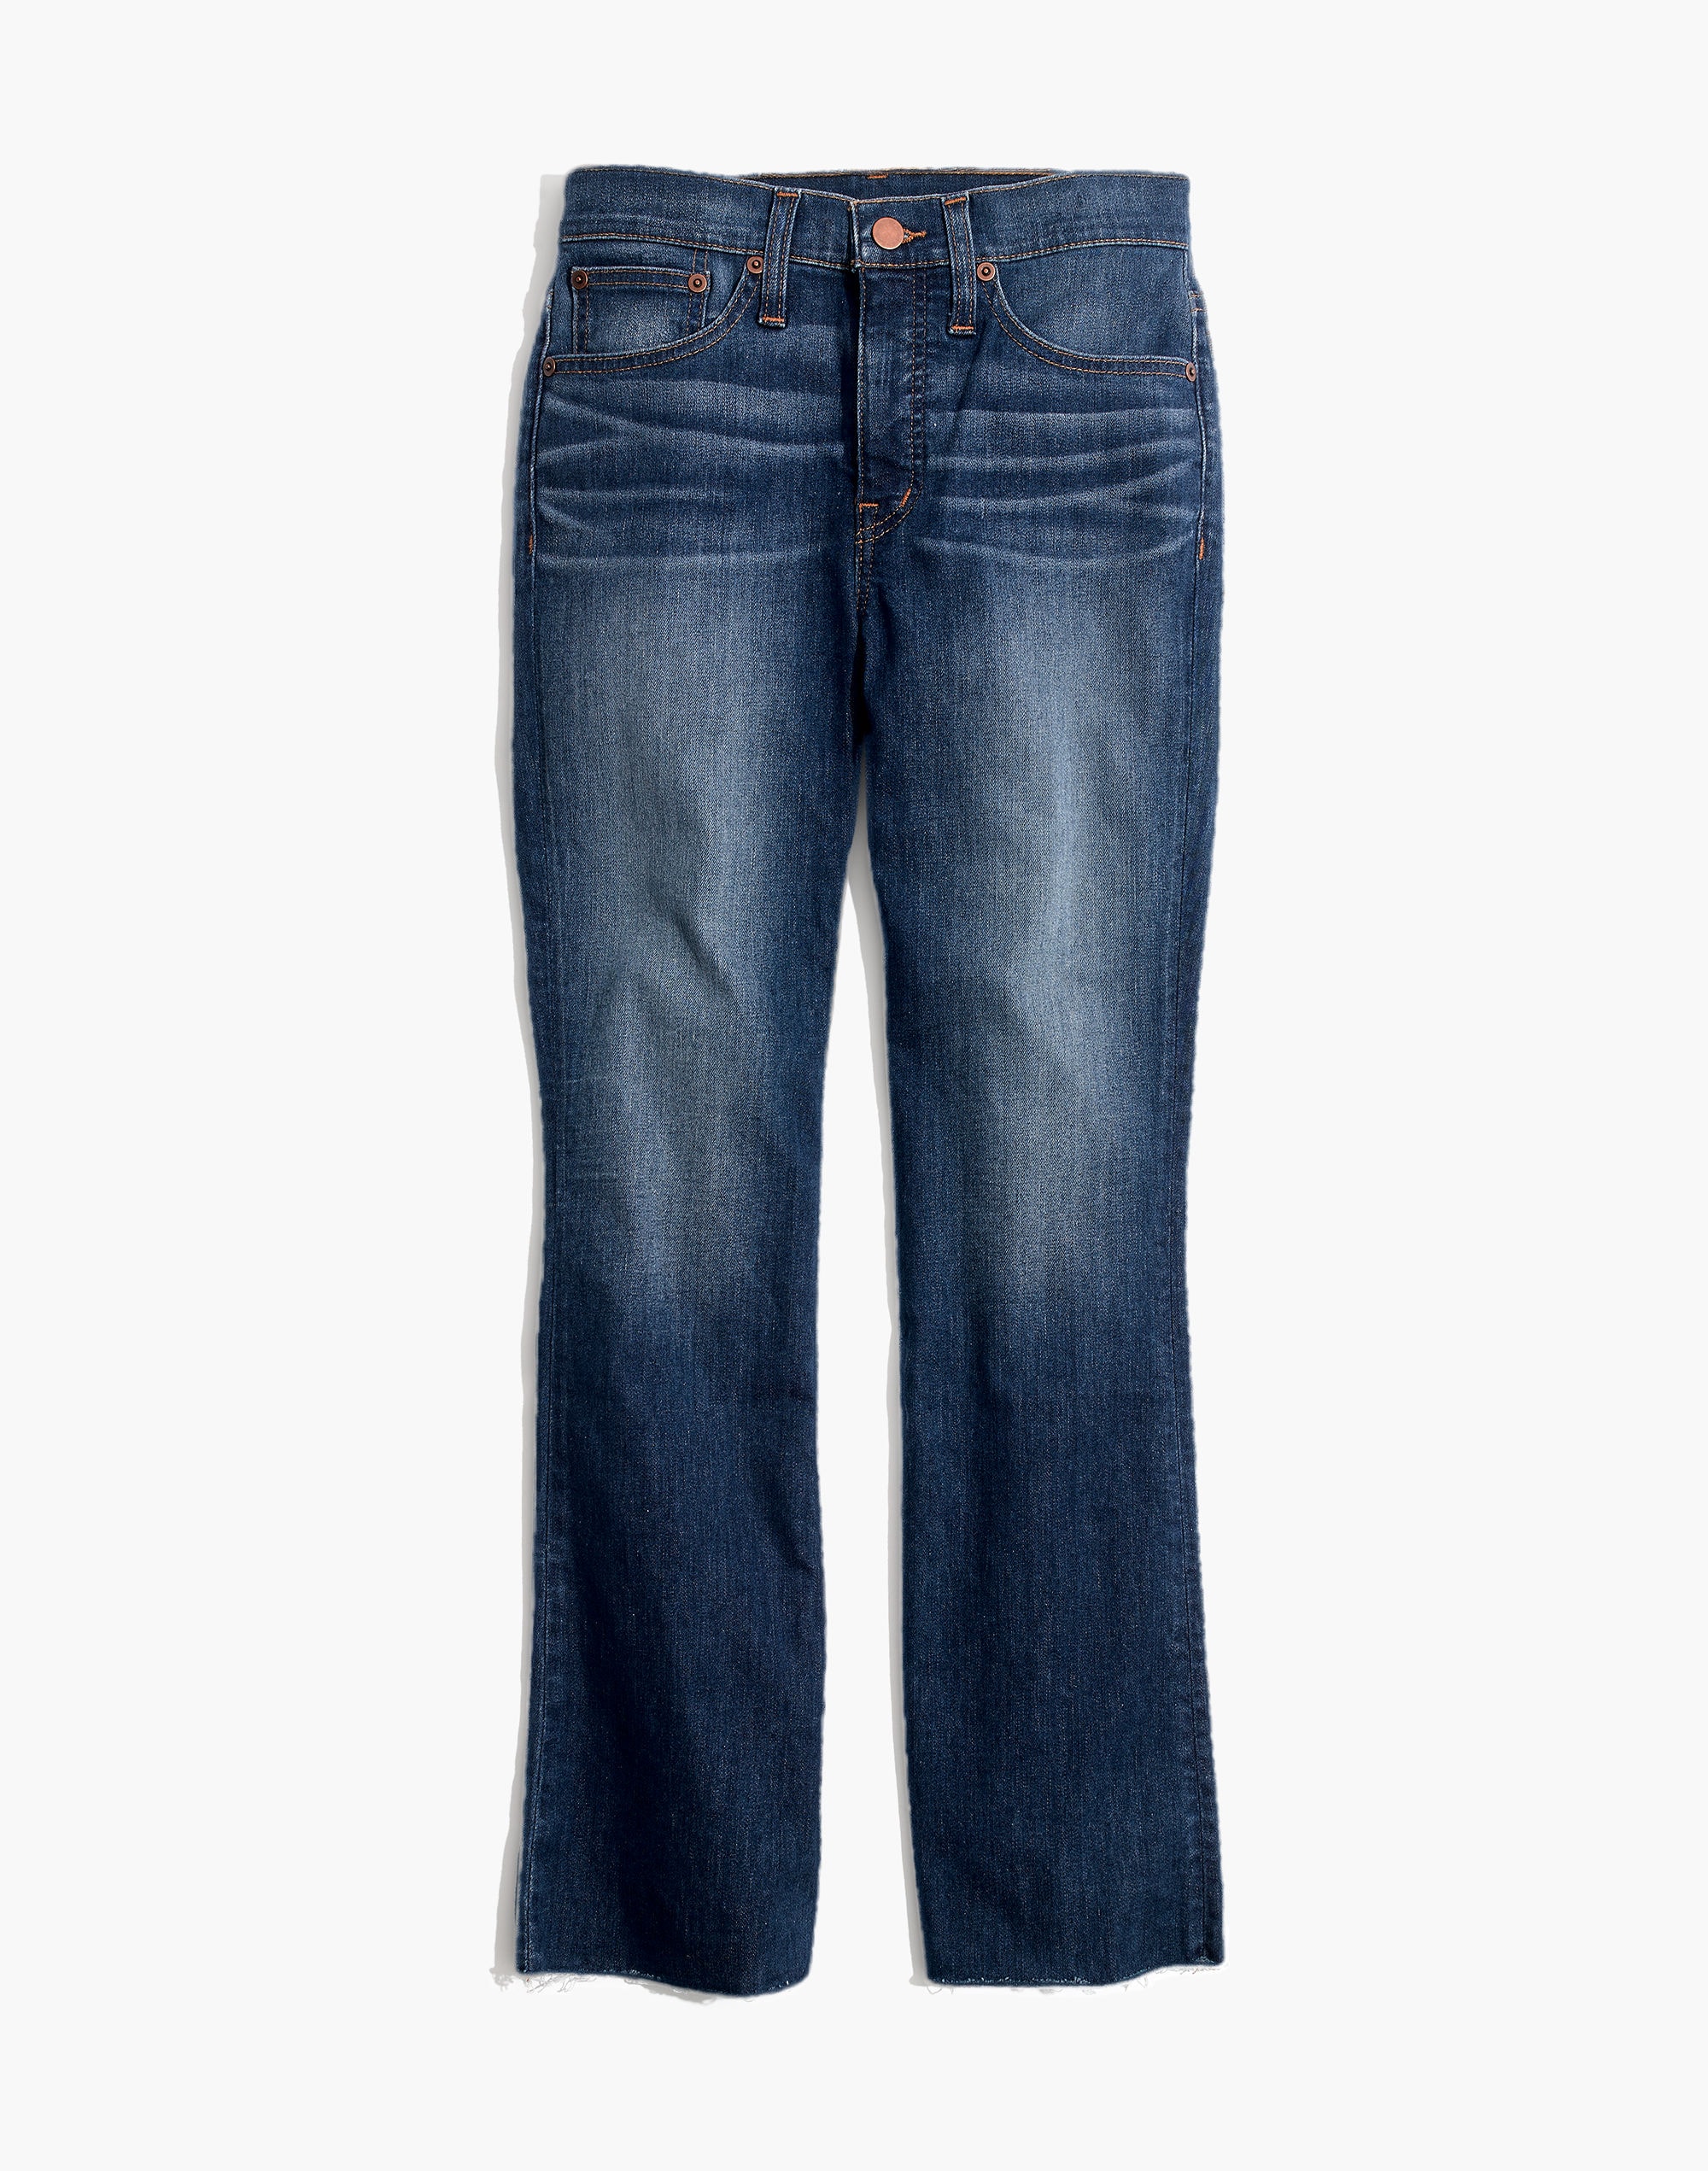 Calça on line jeans 93073 - Calça on line jeans 93073 - ON-LINE